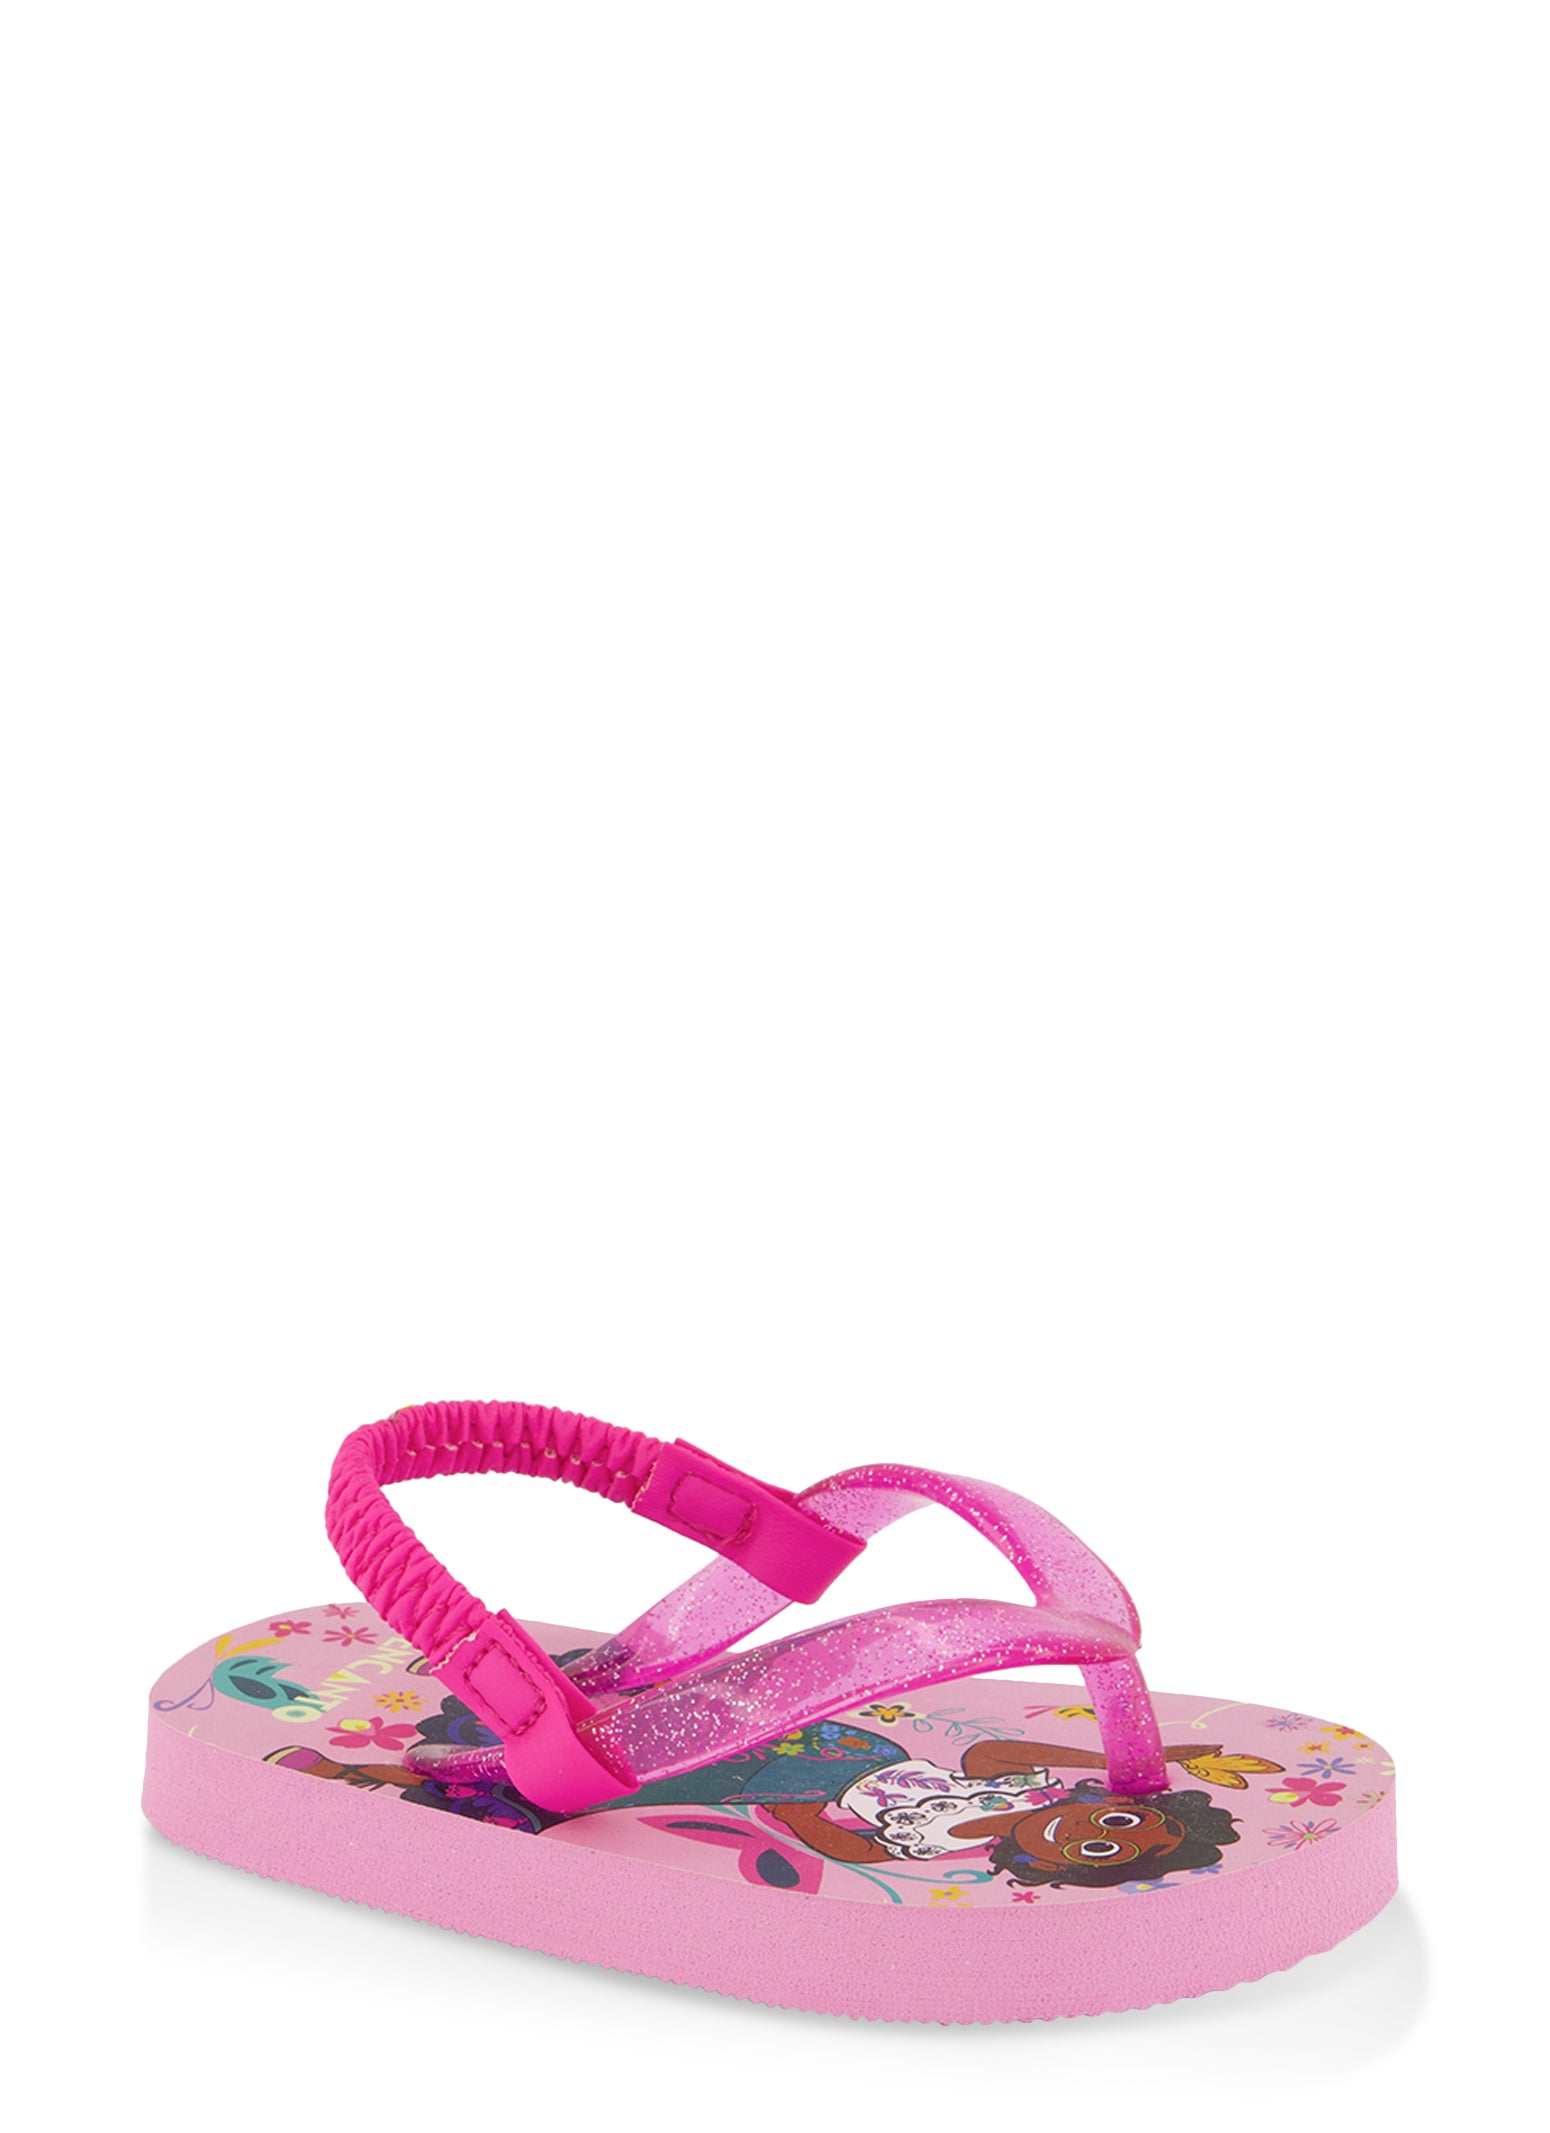 Toddler Girls Encanto Sandals